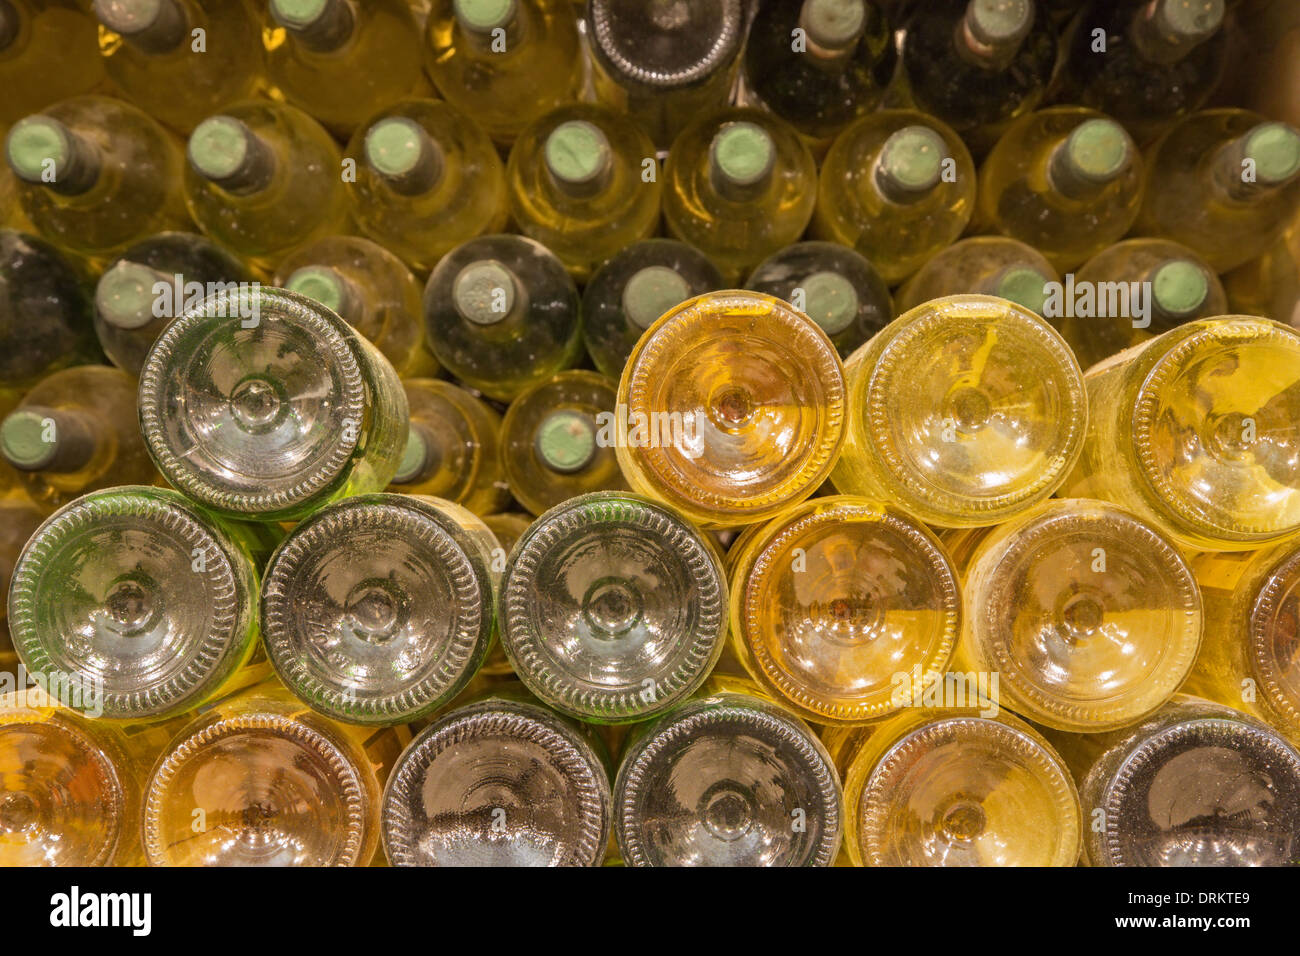 BRATISLAVA, Slowakei - 23. Januar 2014: Detail der Weinflaschen aus inneren callar des großen slowakischen Produzenten. Stockfoto